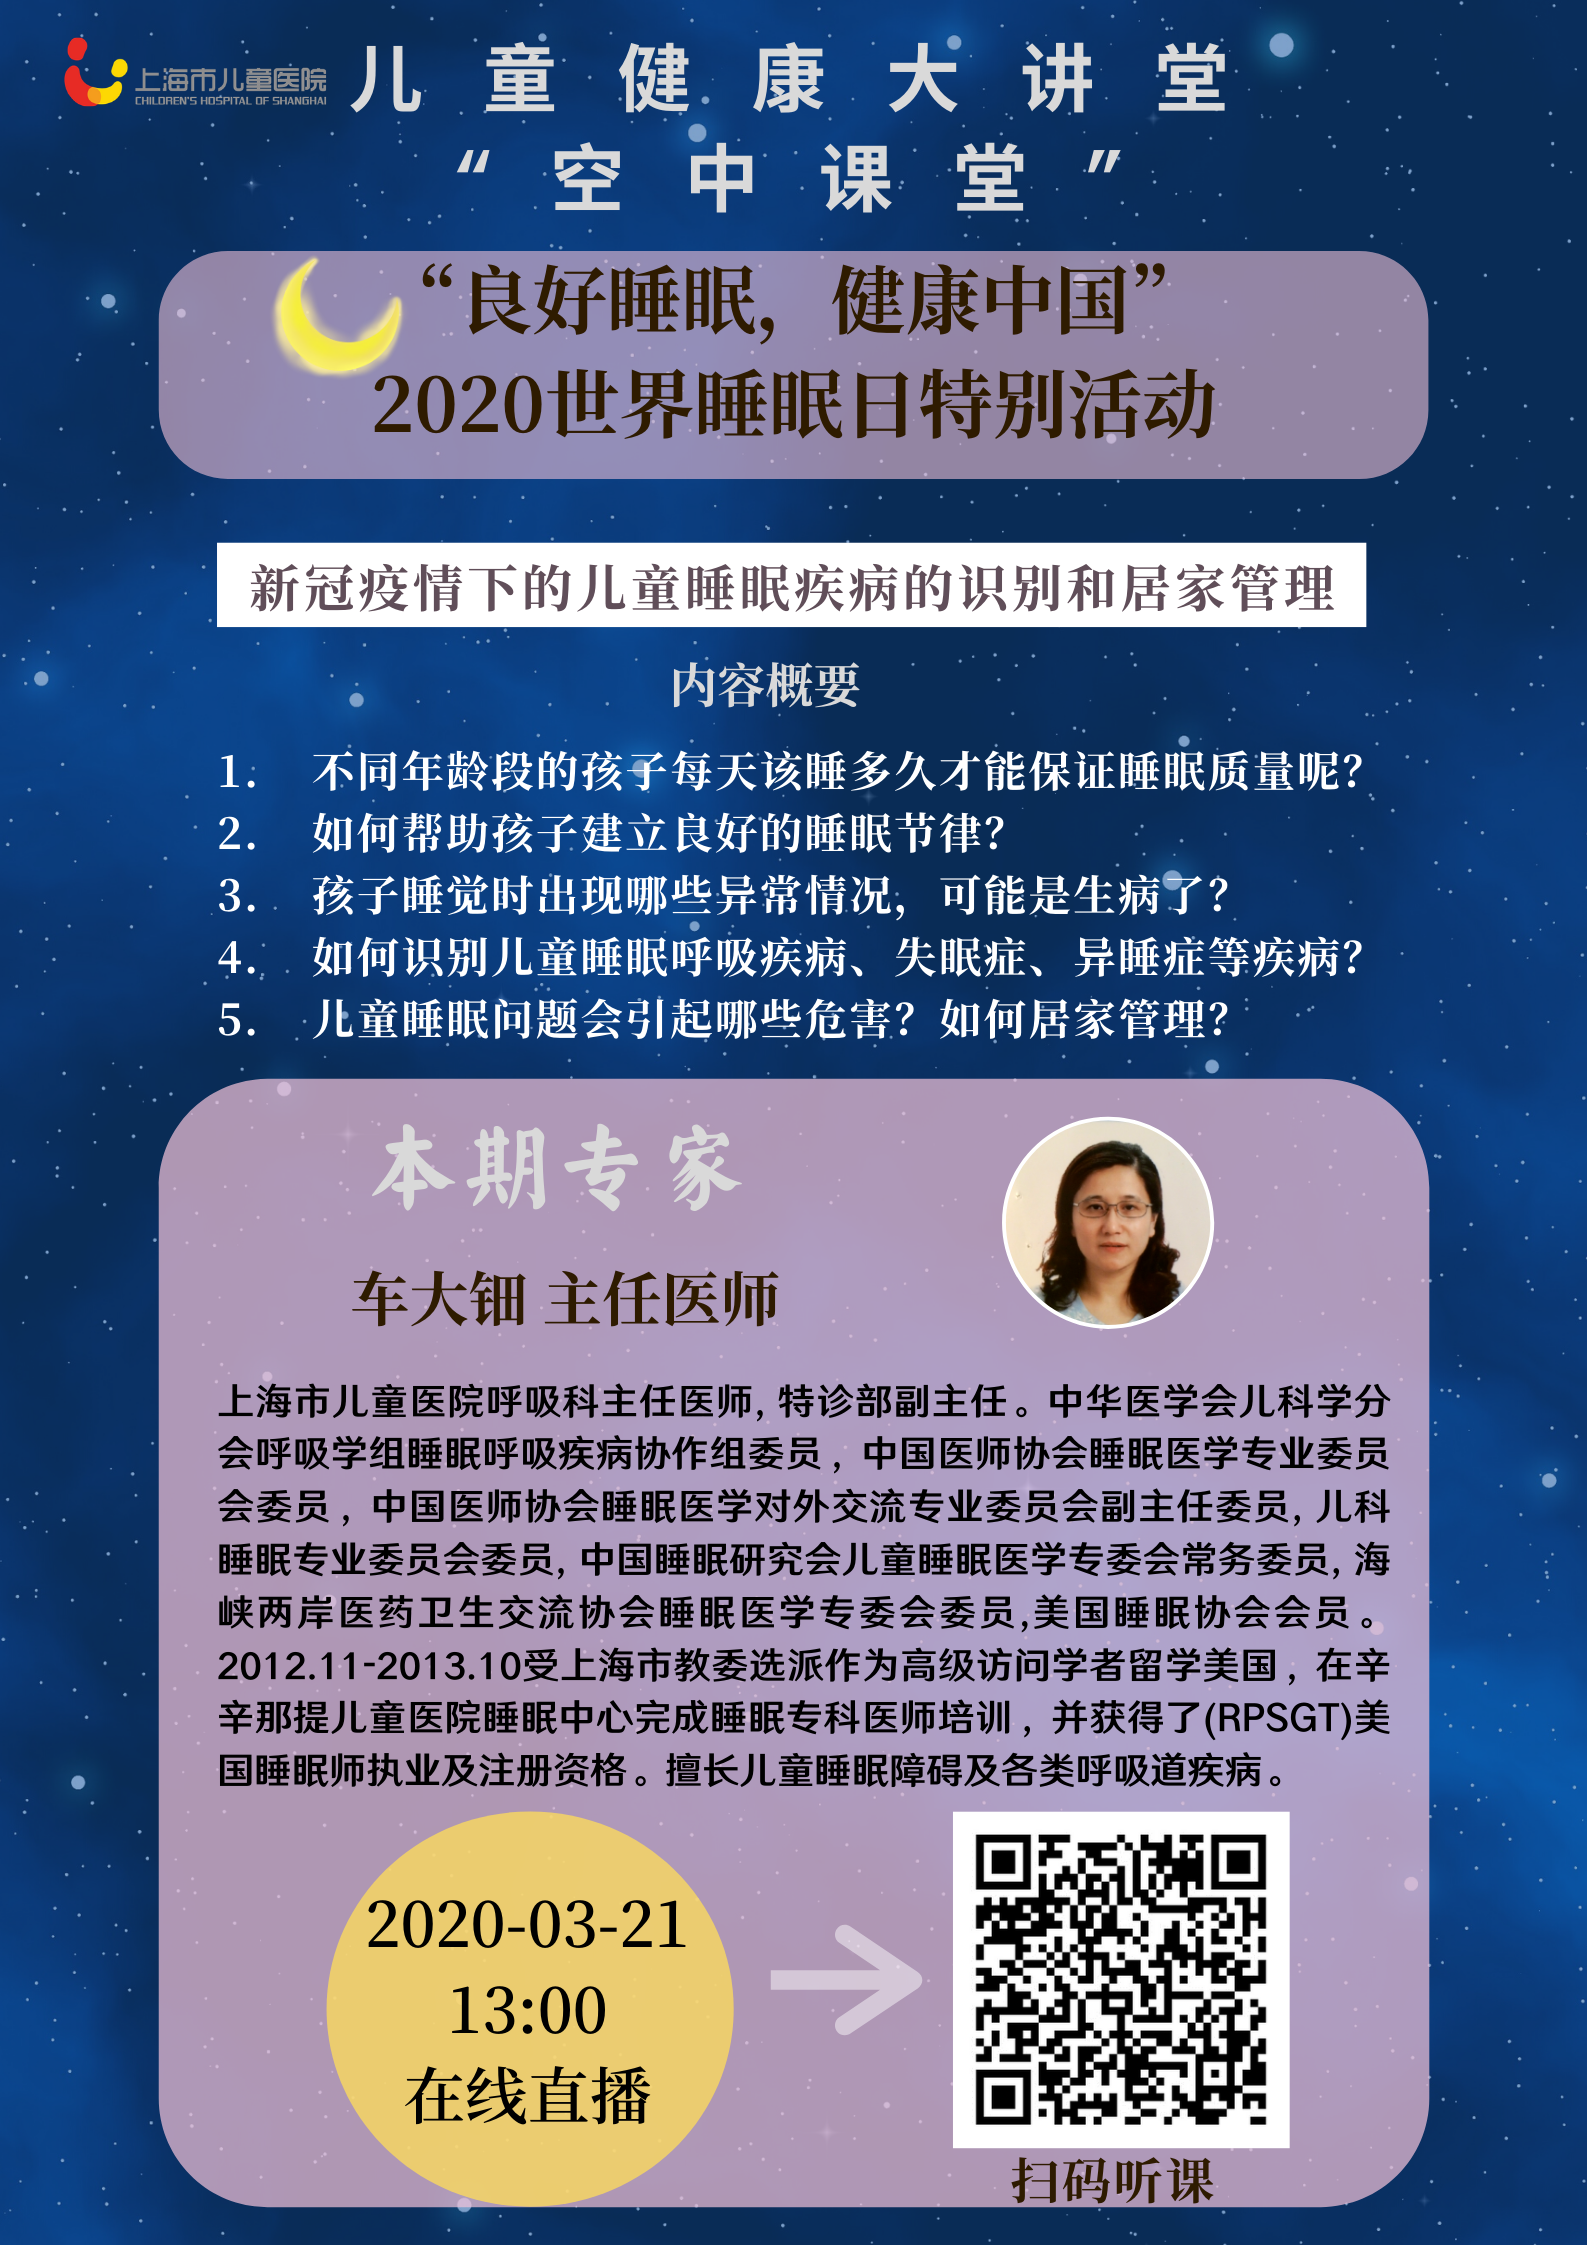 【儿童健康大讲堂“空中课堂”第6期】 “良好睡眠，健康中国”2020世界睡眠日特别活动|新冠疫情下的儿童睡眠疾病的识别和居家管理.png